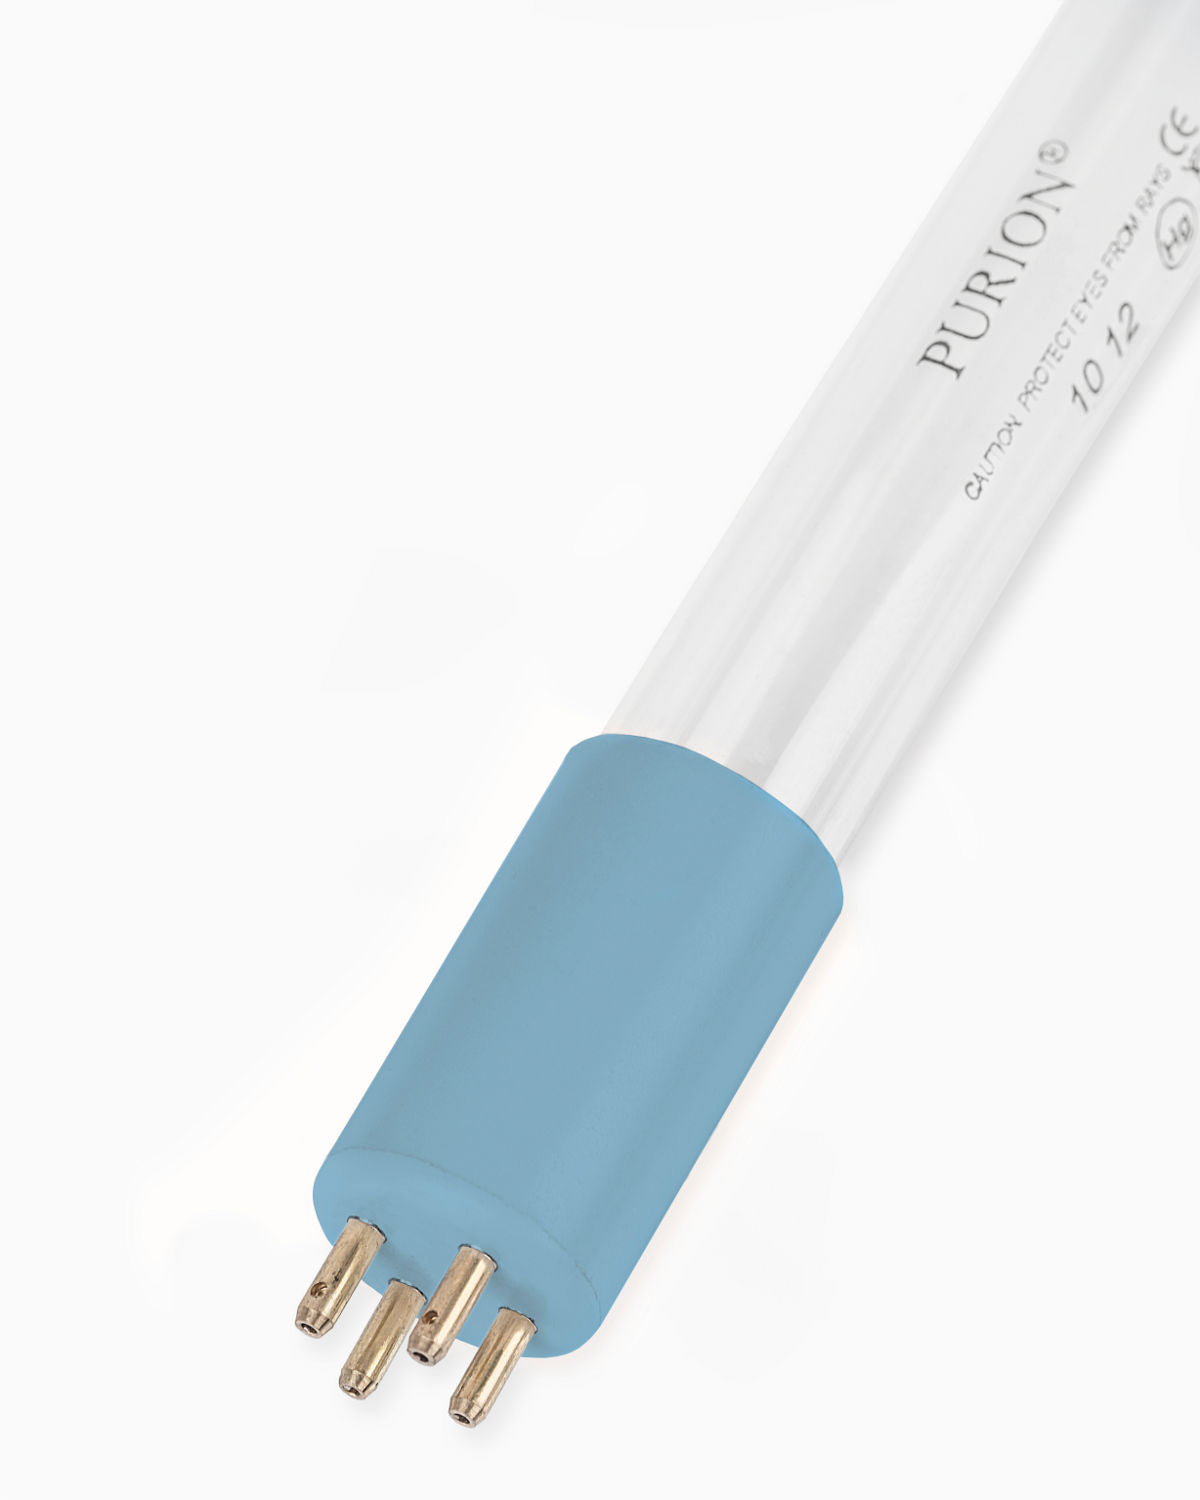 Eine PURION 2501 PVC-U OTC Plus Blaulichtröhre auf weißem Hintergrund, die das UV-C-Desinfektionsverfahren nutzt. (Markenname: PURION GmbH)